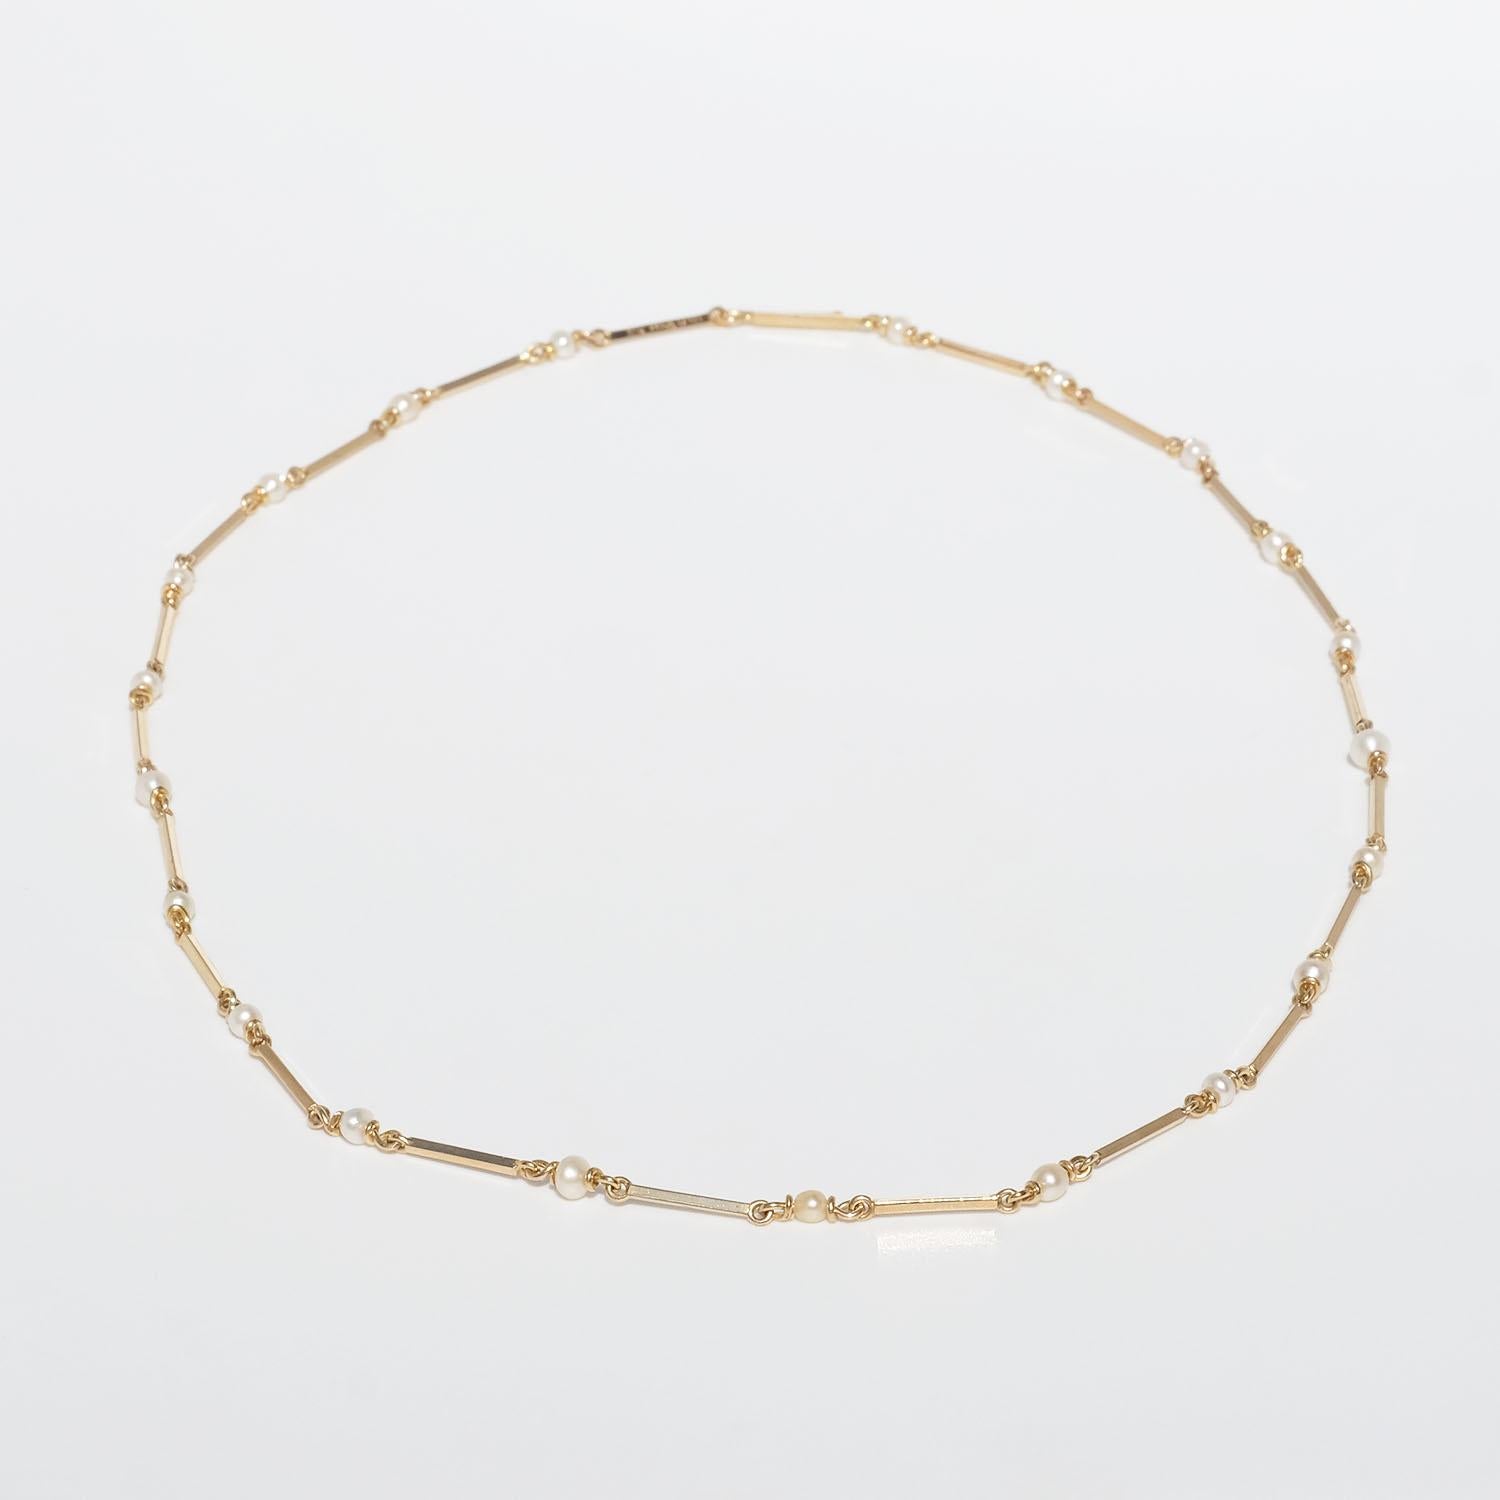 Ce collier en or 18 carats est composé de barres d'or rectangulaires reliées entre elles. Chaque maillon est entouré de perles de culture. L'or a une surface brillante. Le collier se ferme facilement à l'aide d'un crochet.

Ce collier est parfait